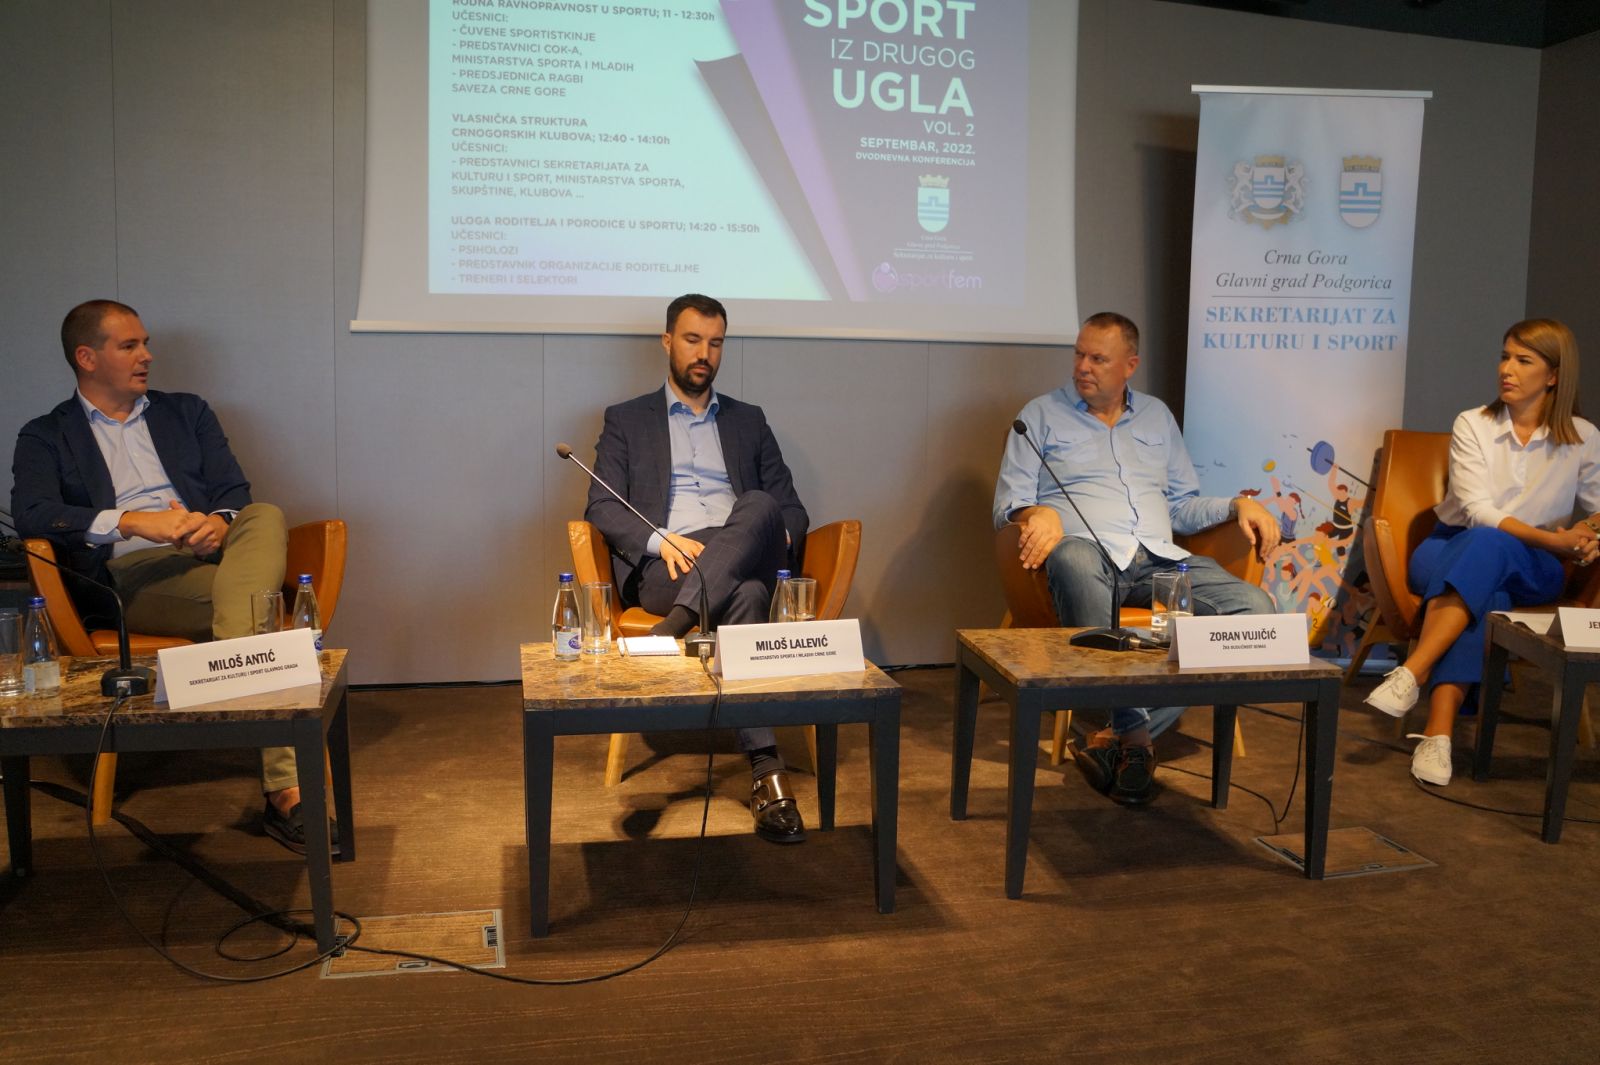 Konferencija  "Sport iz drugog ugla" dobra prilika za razmjenu iskustava i zaključaka za crnogorski sport